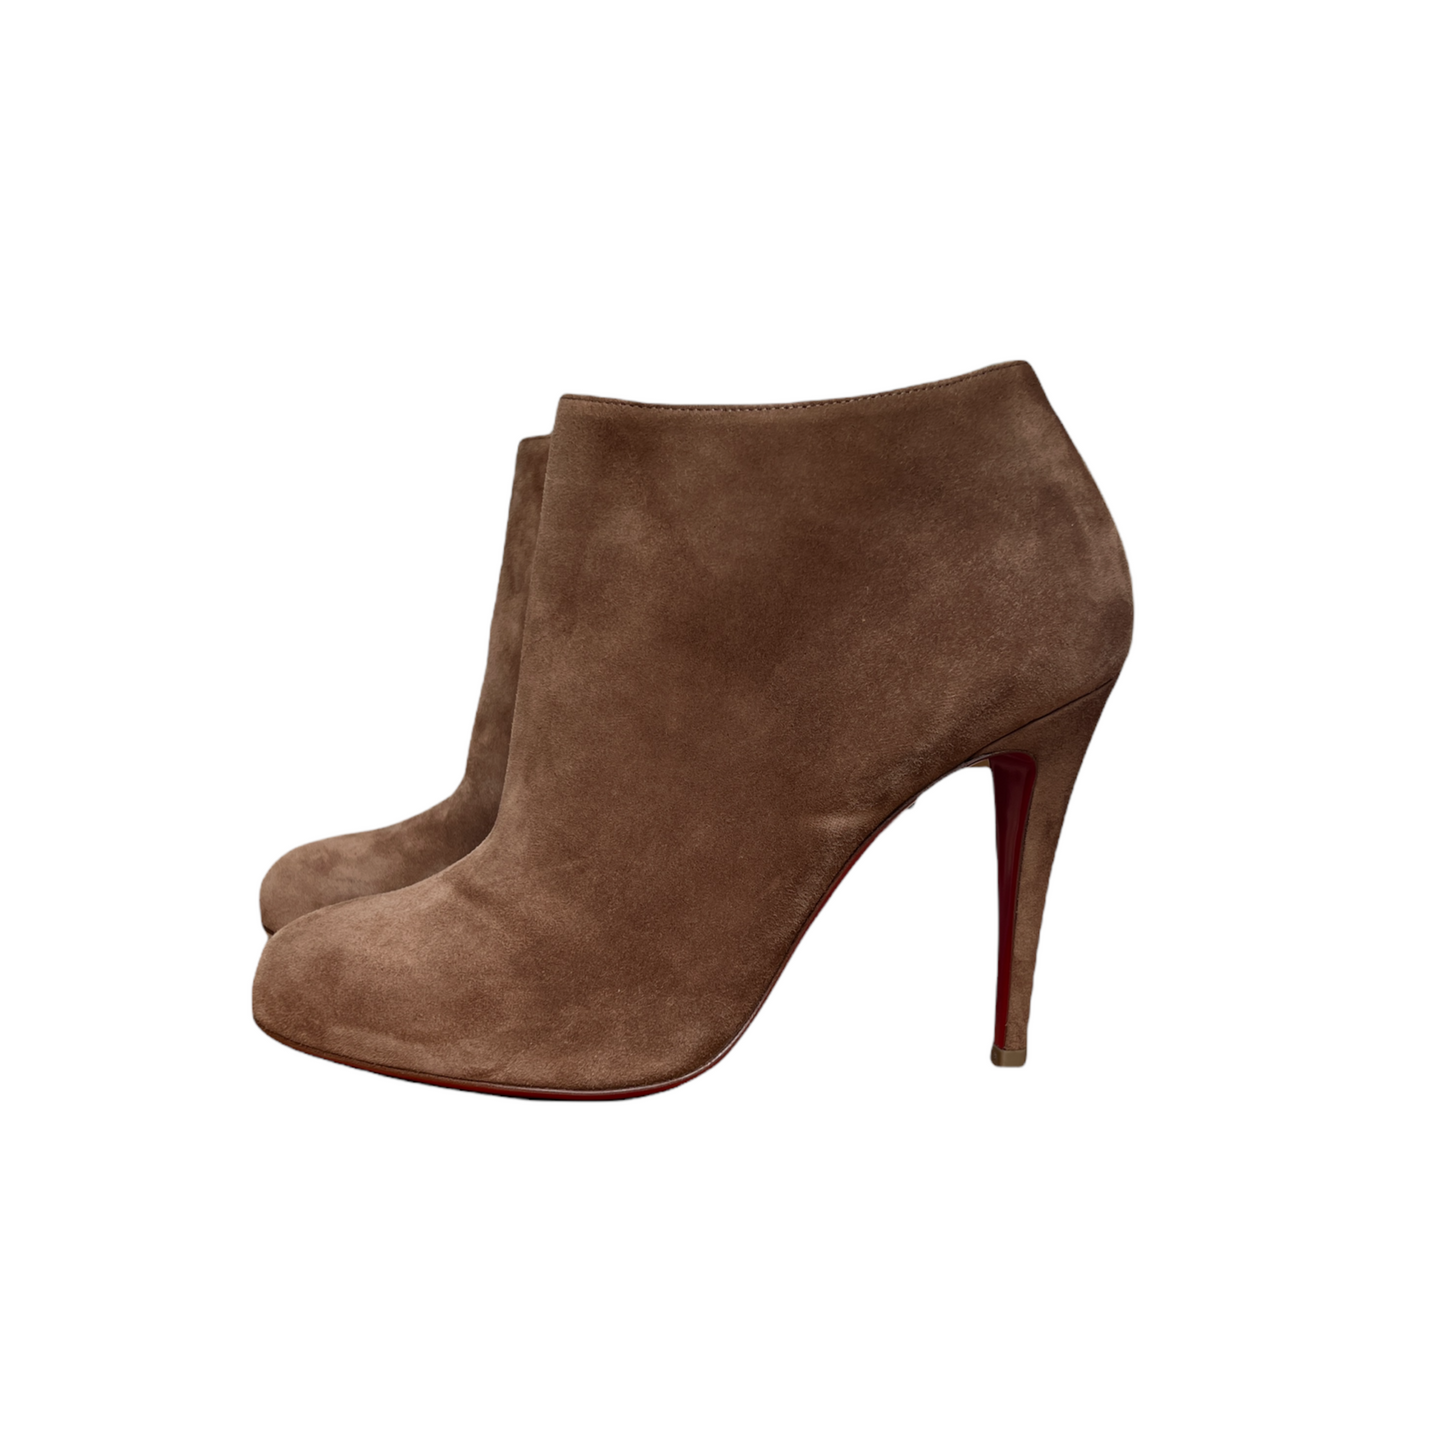 Brown Suede High Heels Boots - 10.5